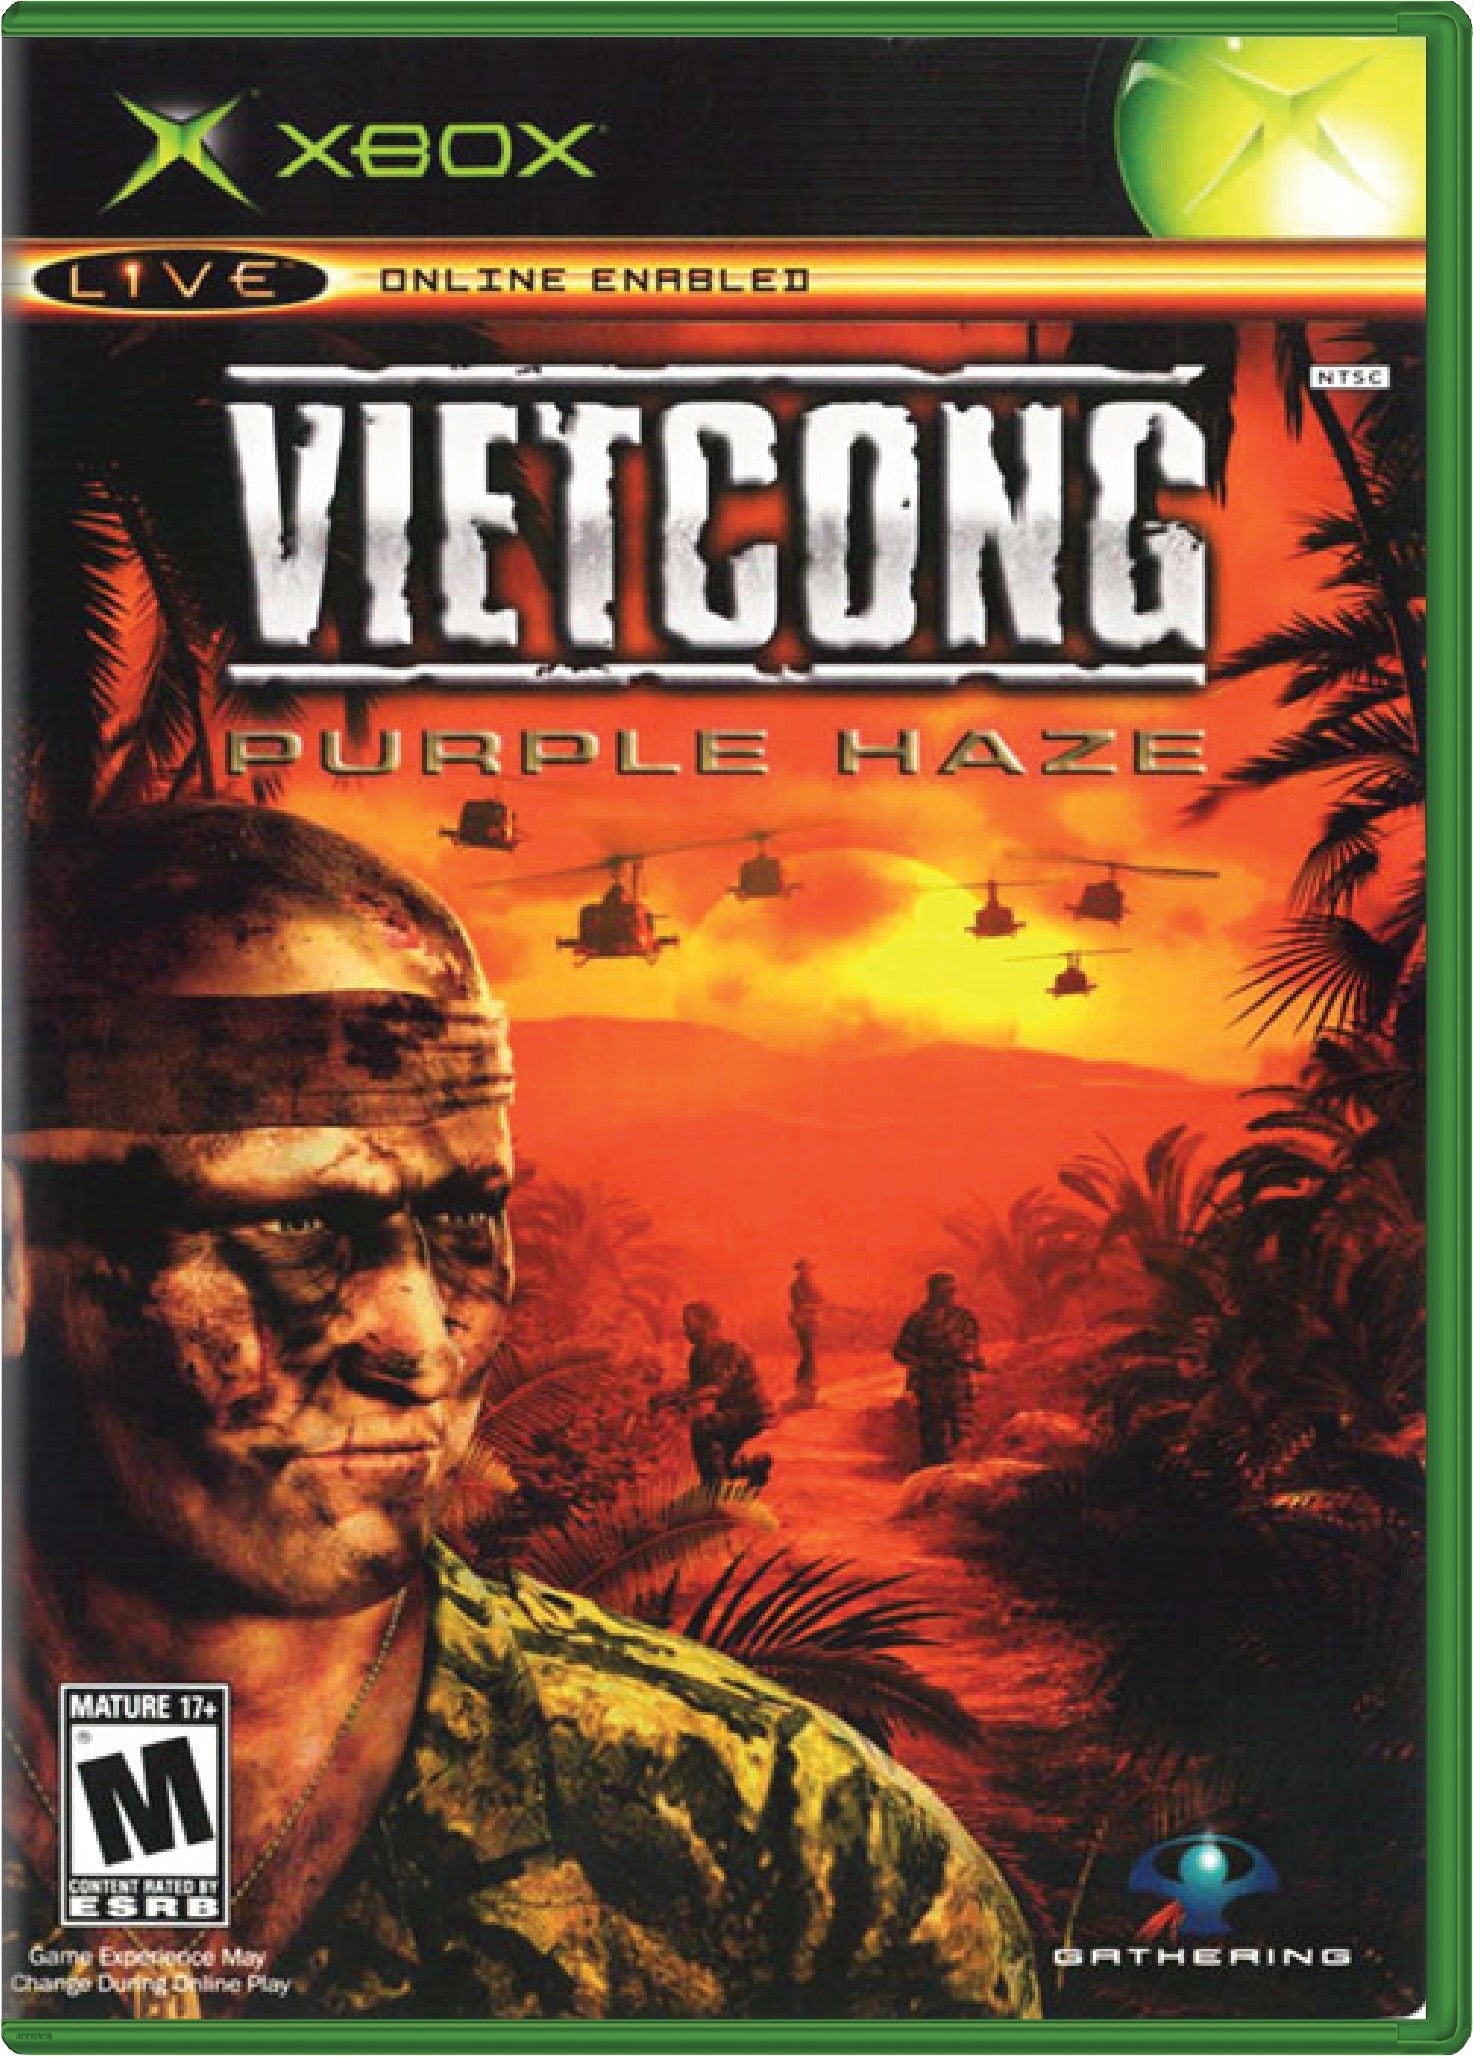 Vietcong Purple Haze Cover Art